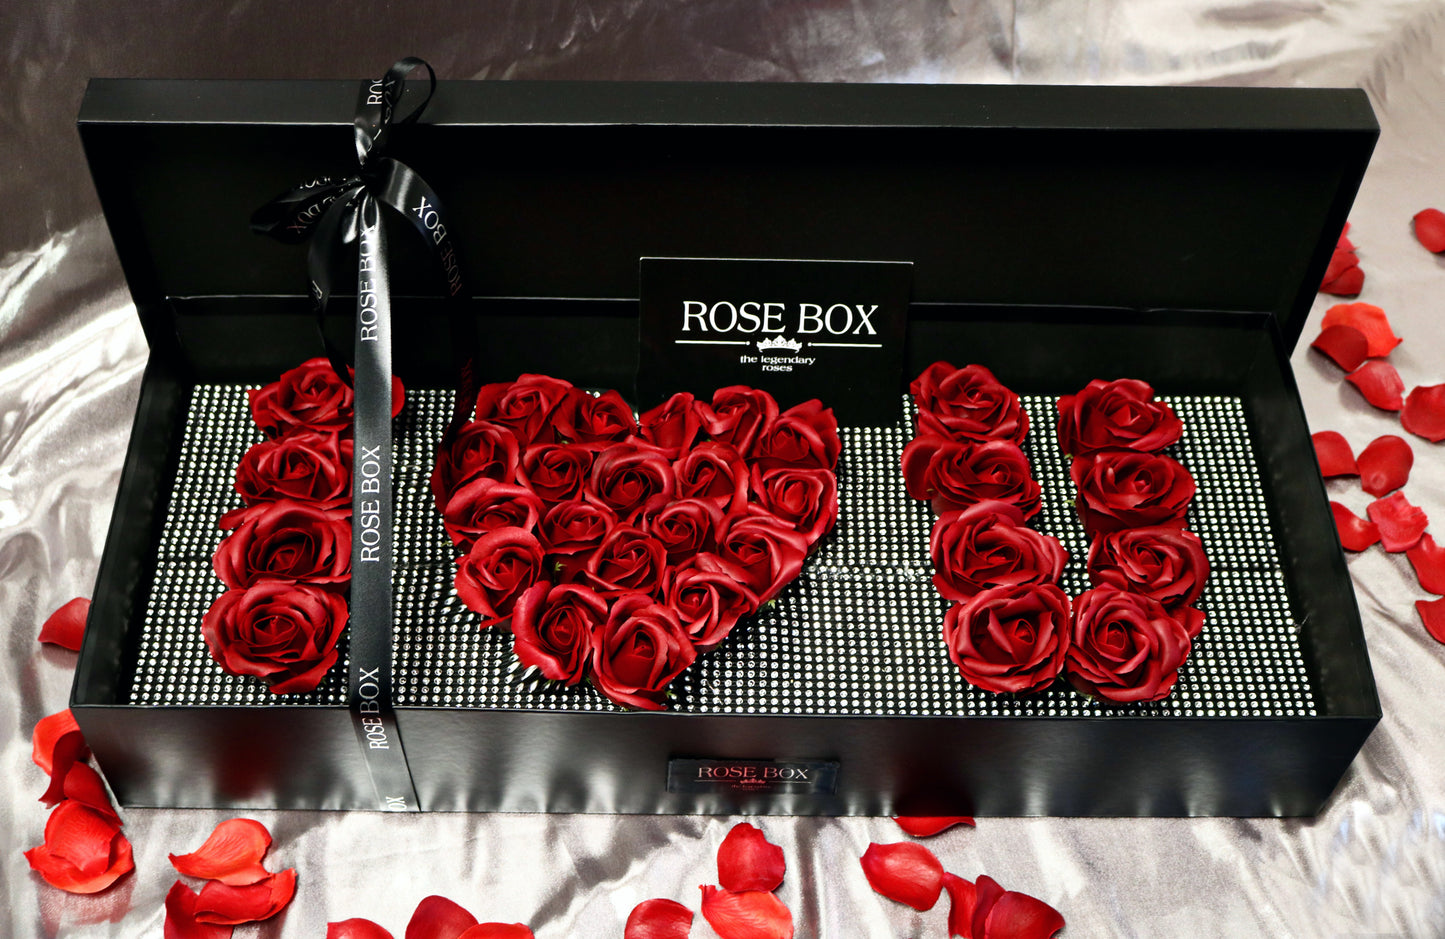 Cutie mare neagră cu capac și cristale cu trandafiri mari roșu închis cu textul “I love you”